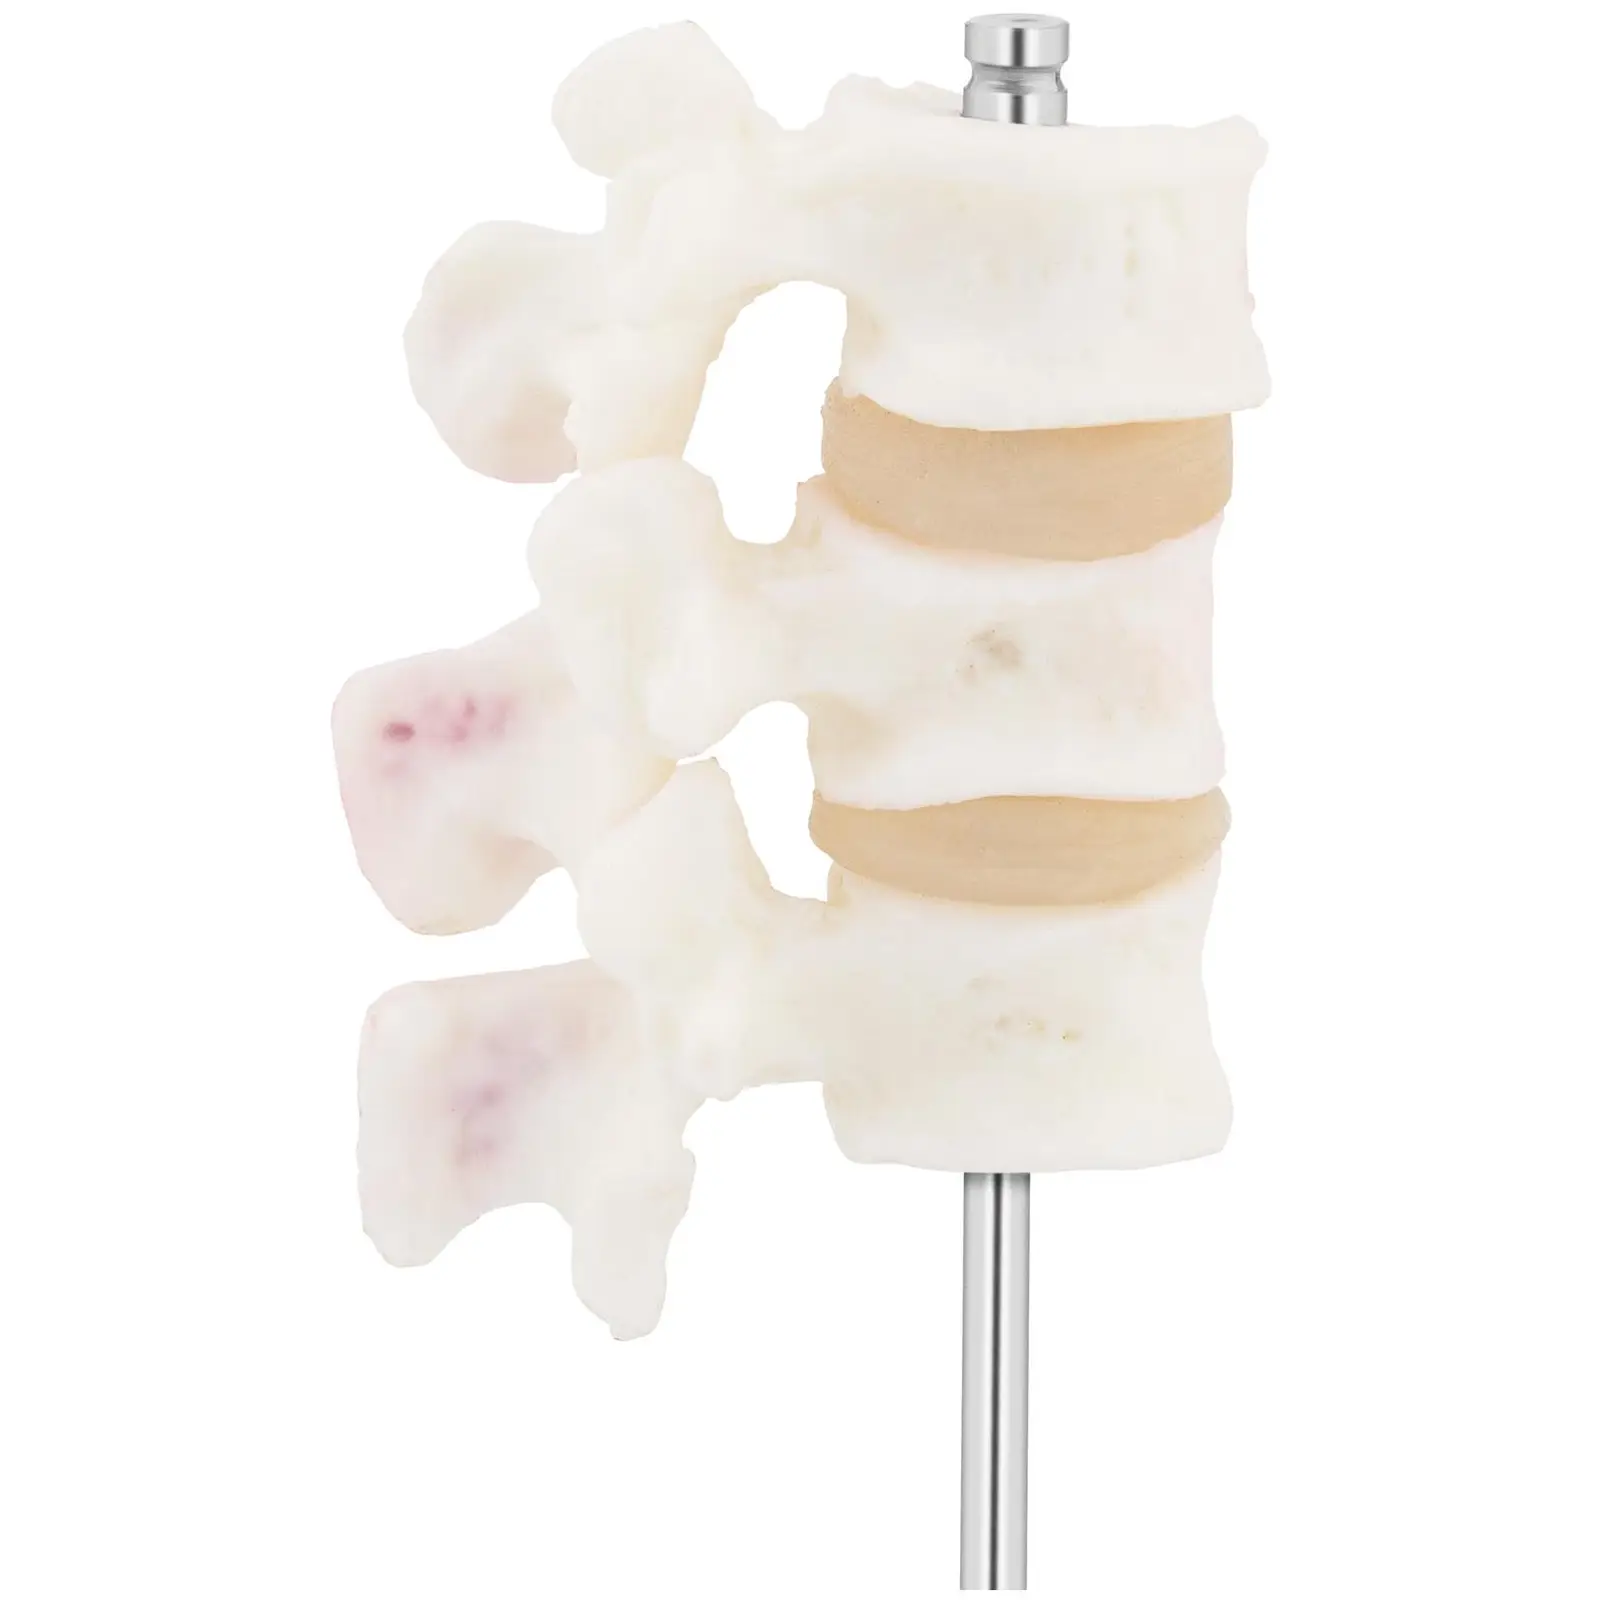 Osteoporoza lędźwiowa - model anatomiczny